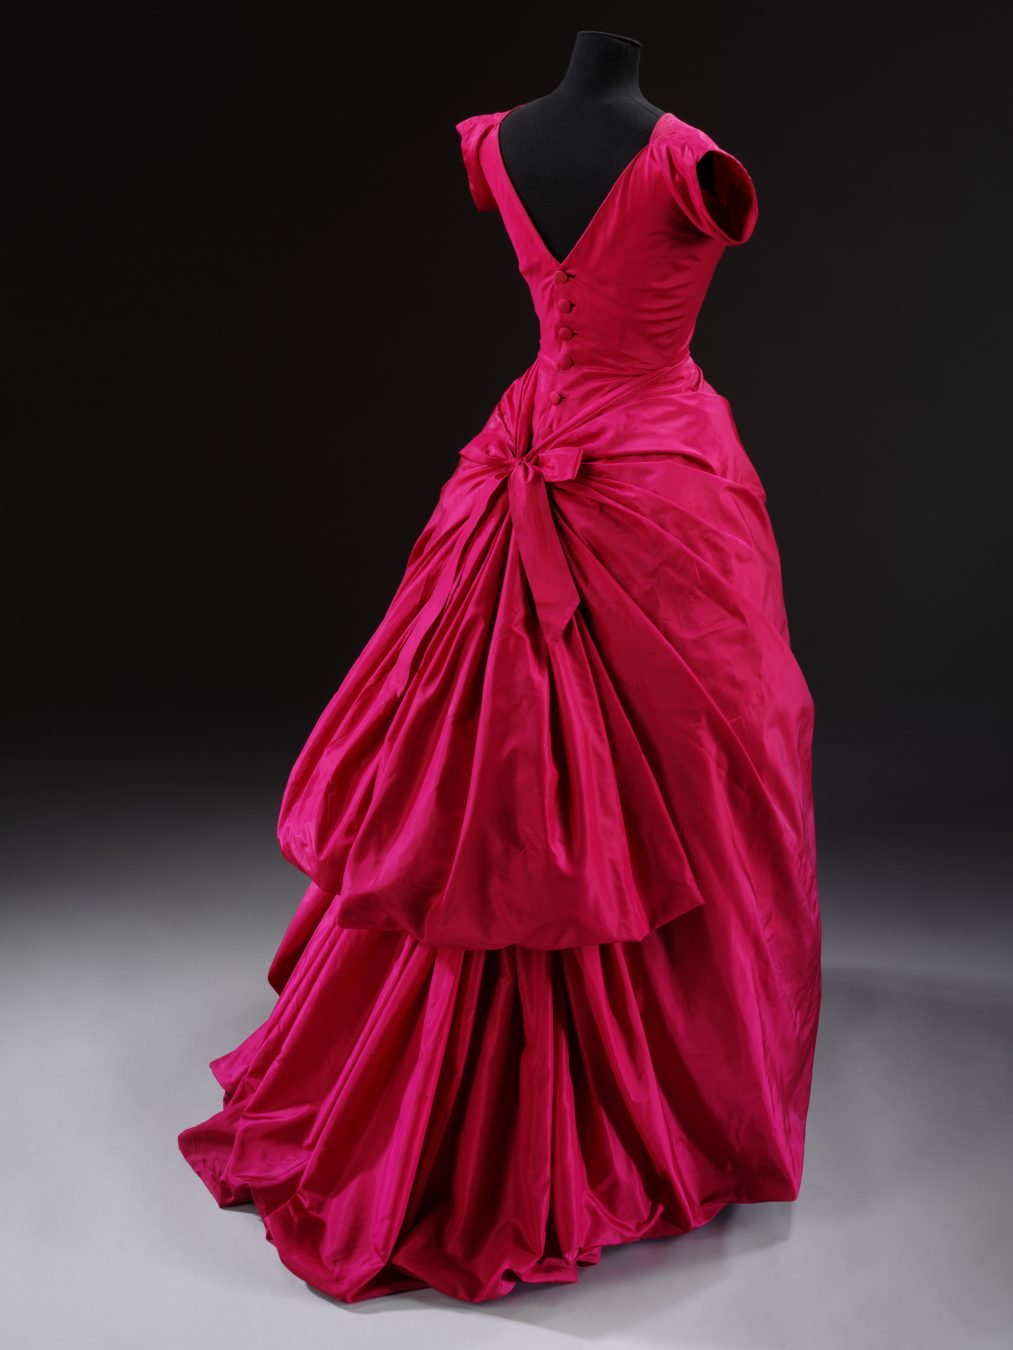 picar Figura caricia Balenciaga: Shaping Fashion” at the Victoria and Albert Museum | MONTECRISTO